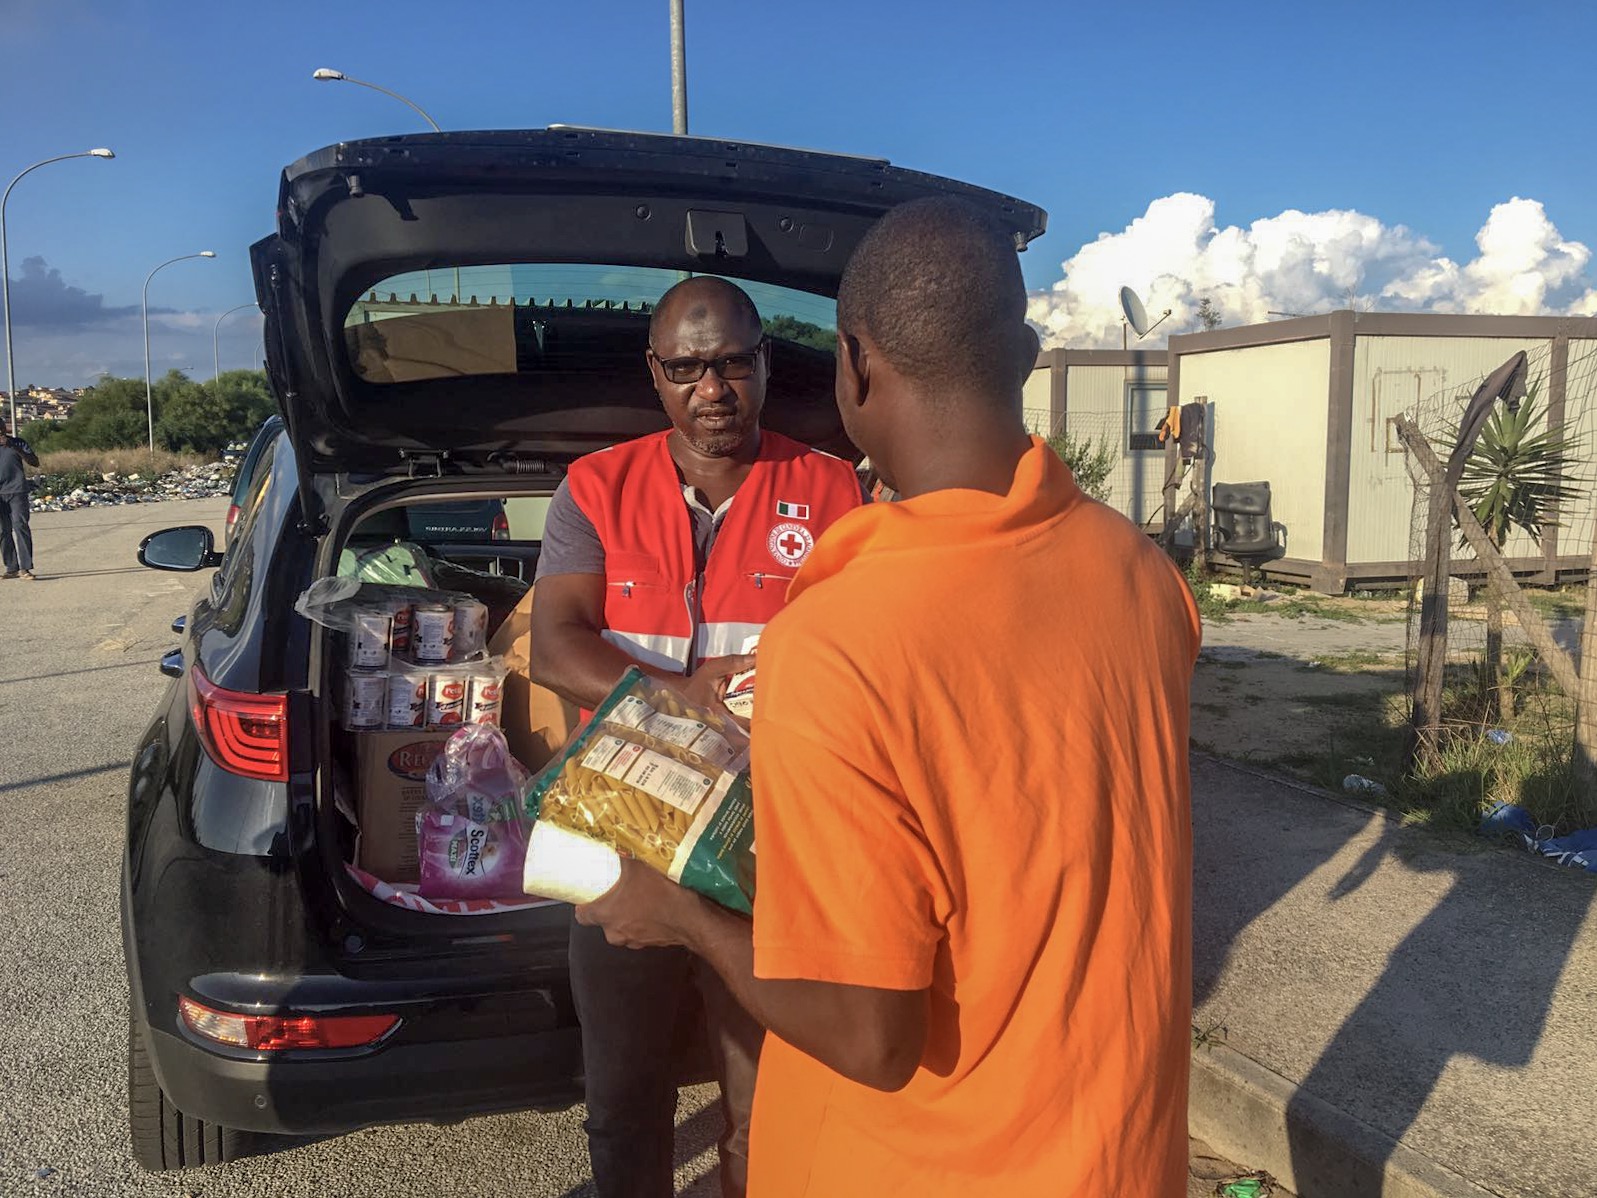 Caporalato: il presidio umanitario della Croce Rossa per i braccianti del Mezzogiorno